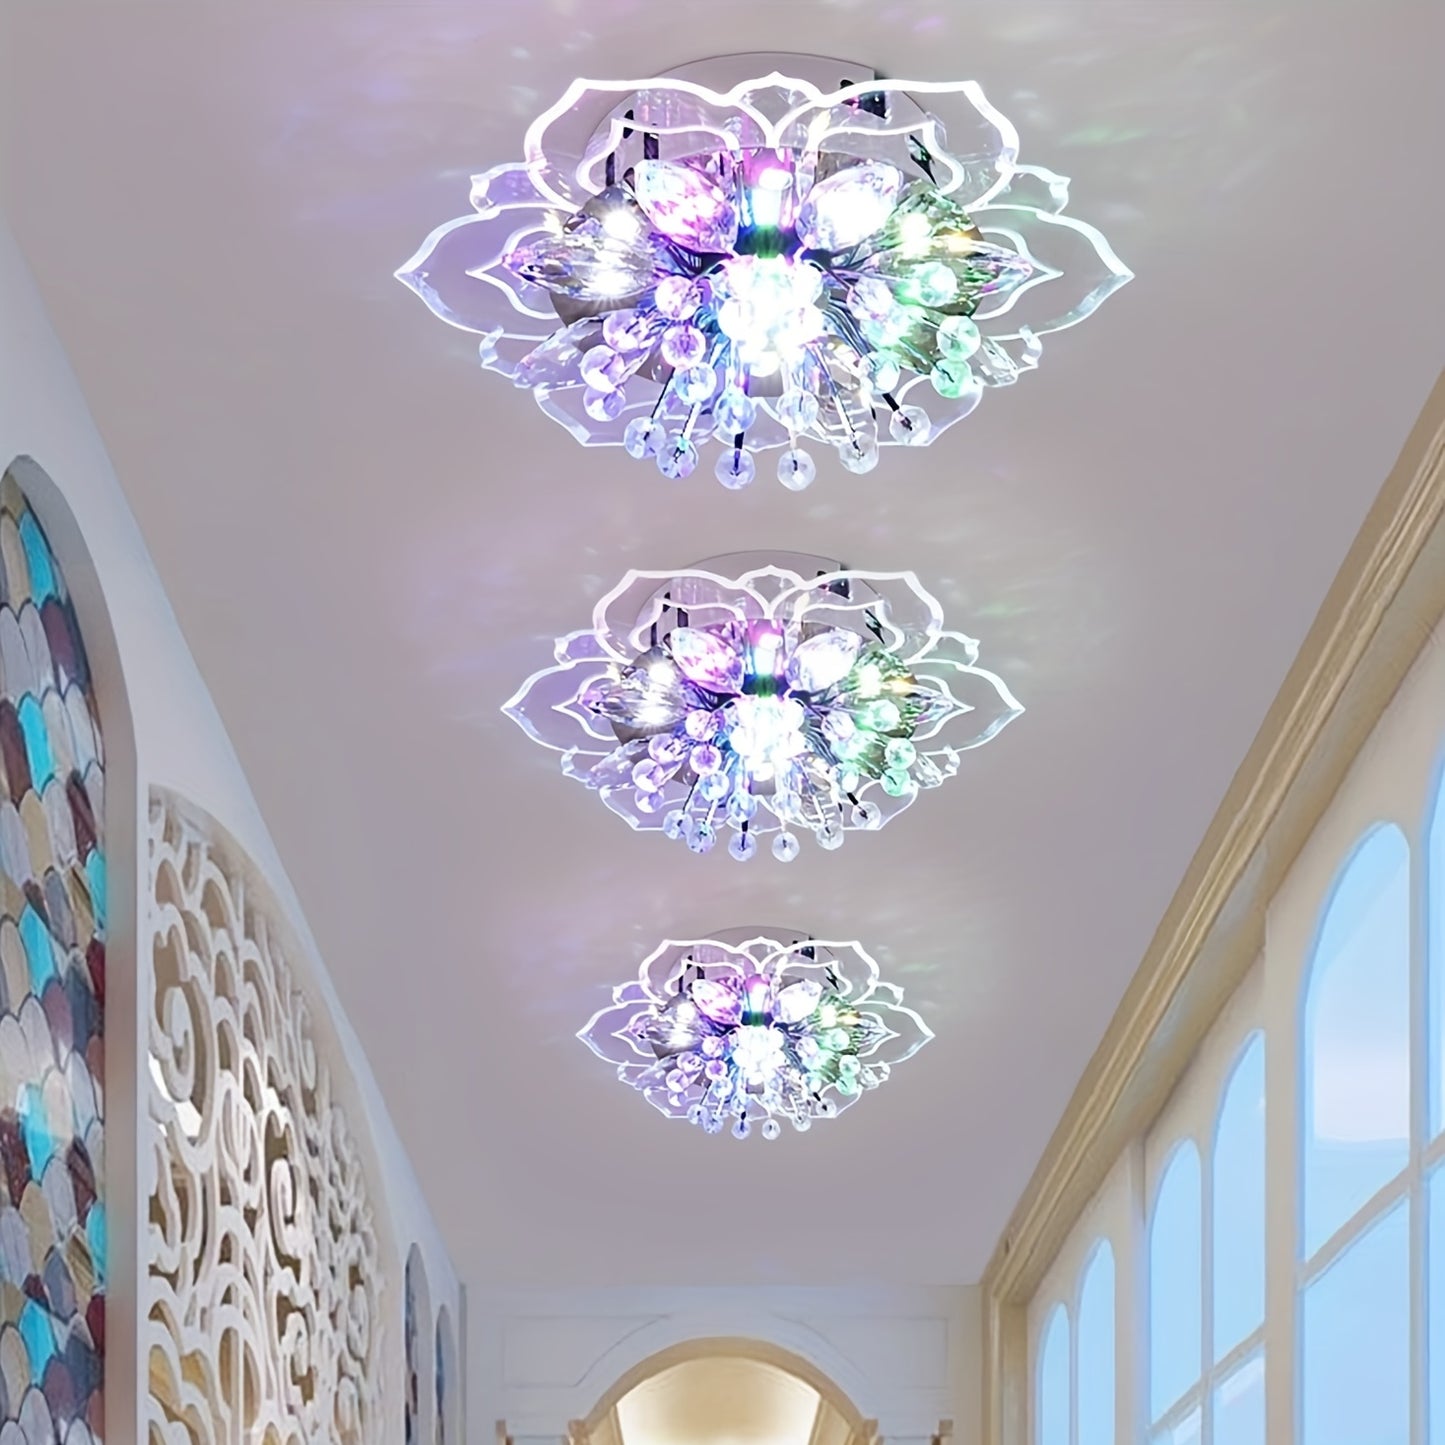 1st moderna kristallkronblad LED-taklampor, för gång, hall, korridor, trappa, villa, galleri kök kaffebar inomhusbelysning